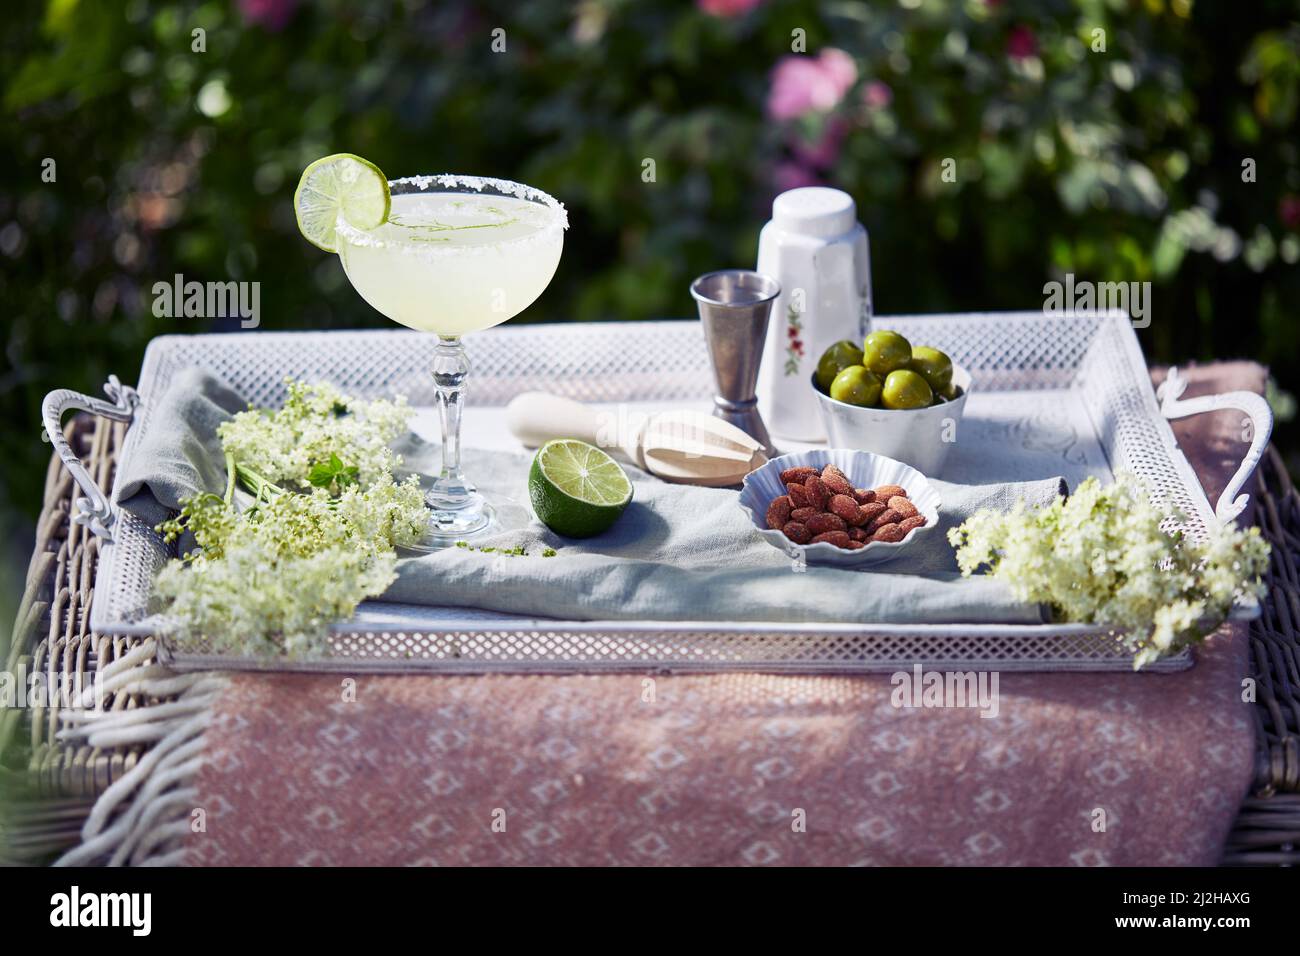 Cóctel, aperitivos y flores en la bandeja del jardín Foto de stock